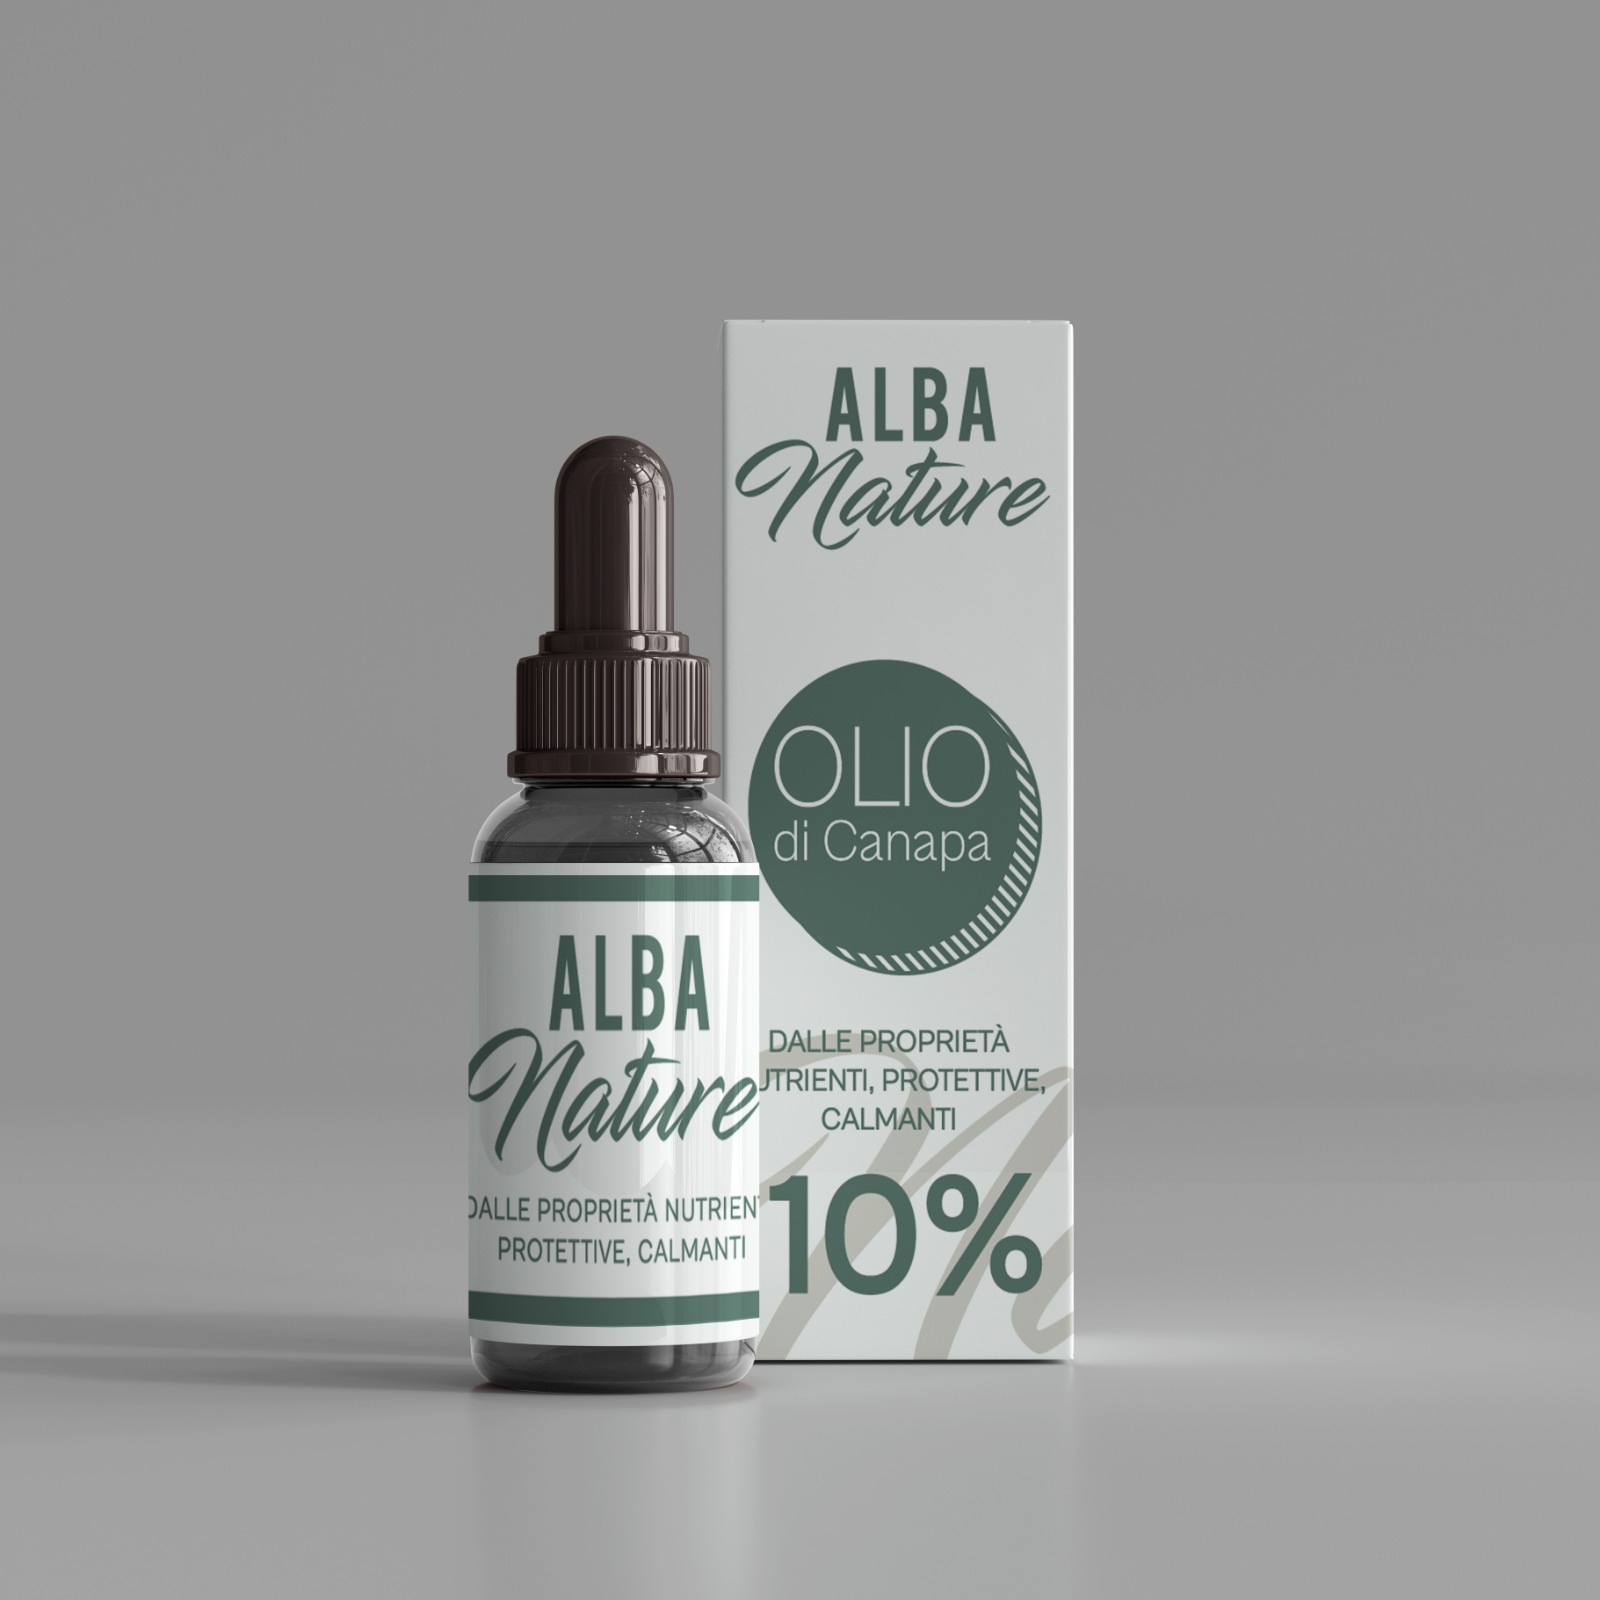 Alba Nature Olio CBD - Vendita Olio di Canapa Naturale 10%